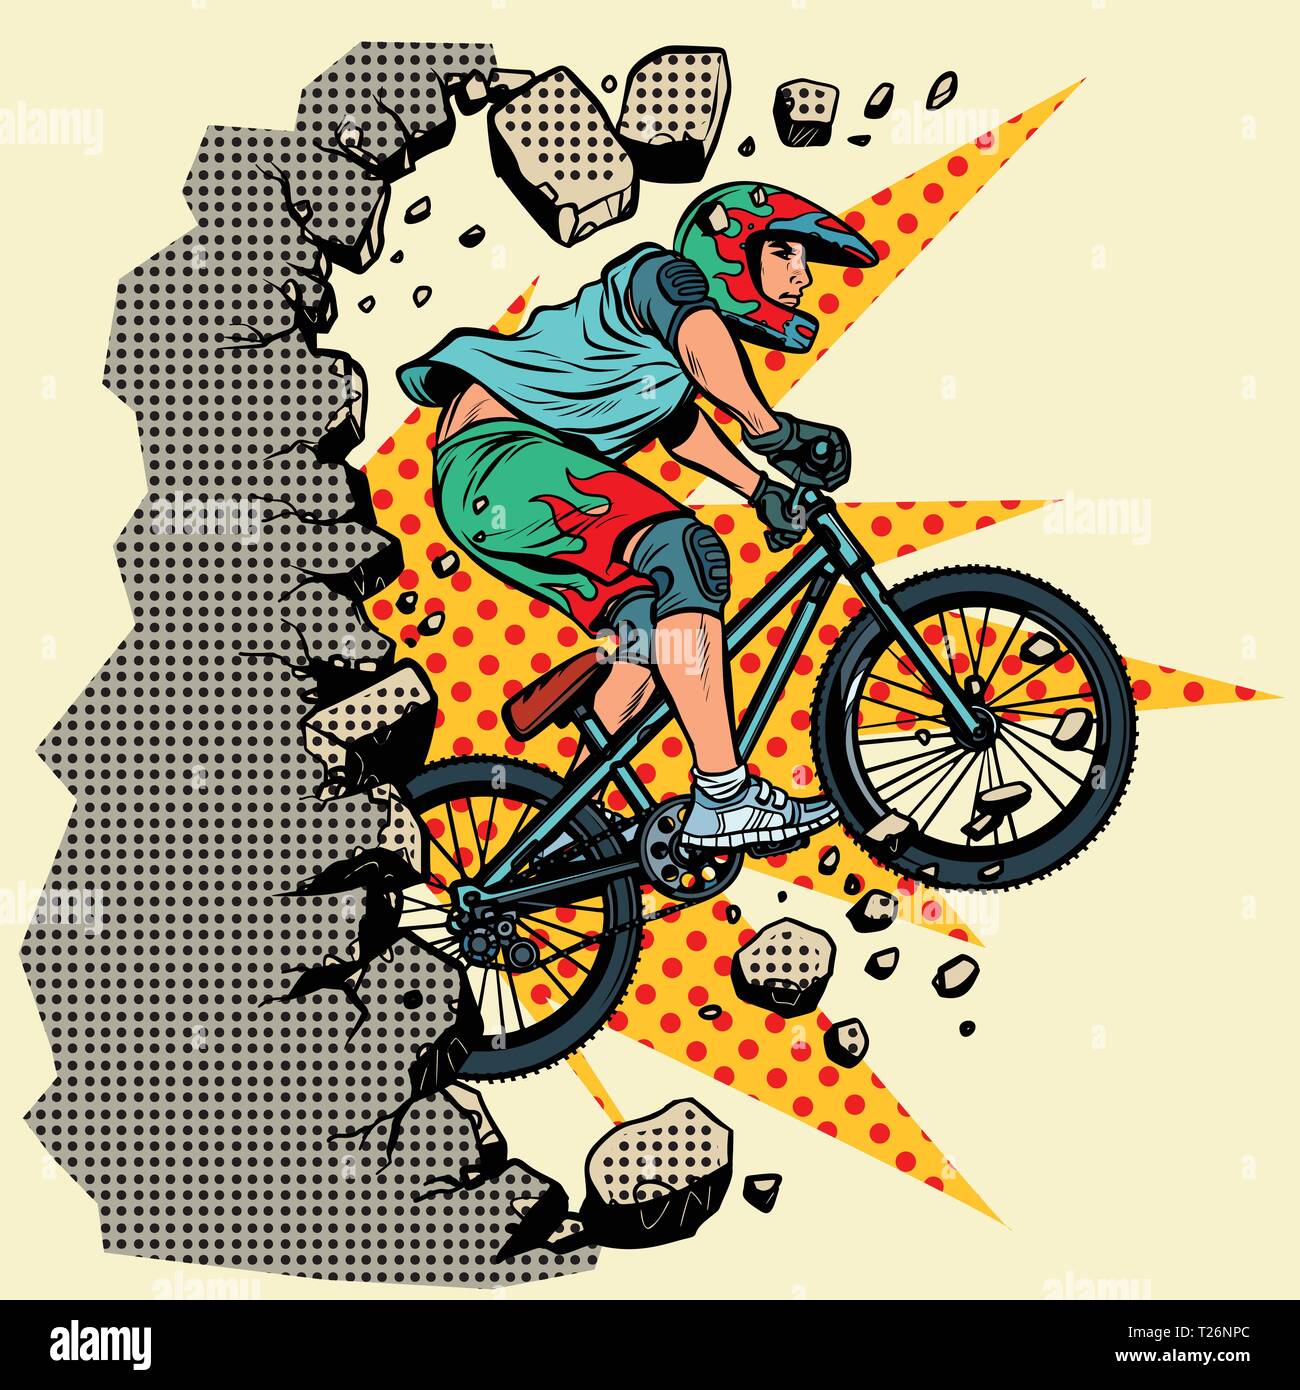 Radfahrer Extremsport Wand bricht. Vorwärts bewegen, persönliche Entwicklung. Pop Art retro Vektor illustration Vintage kitsch Stock Vektor